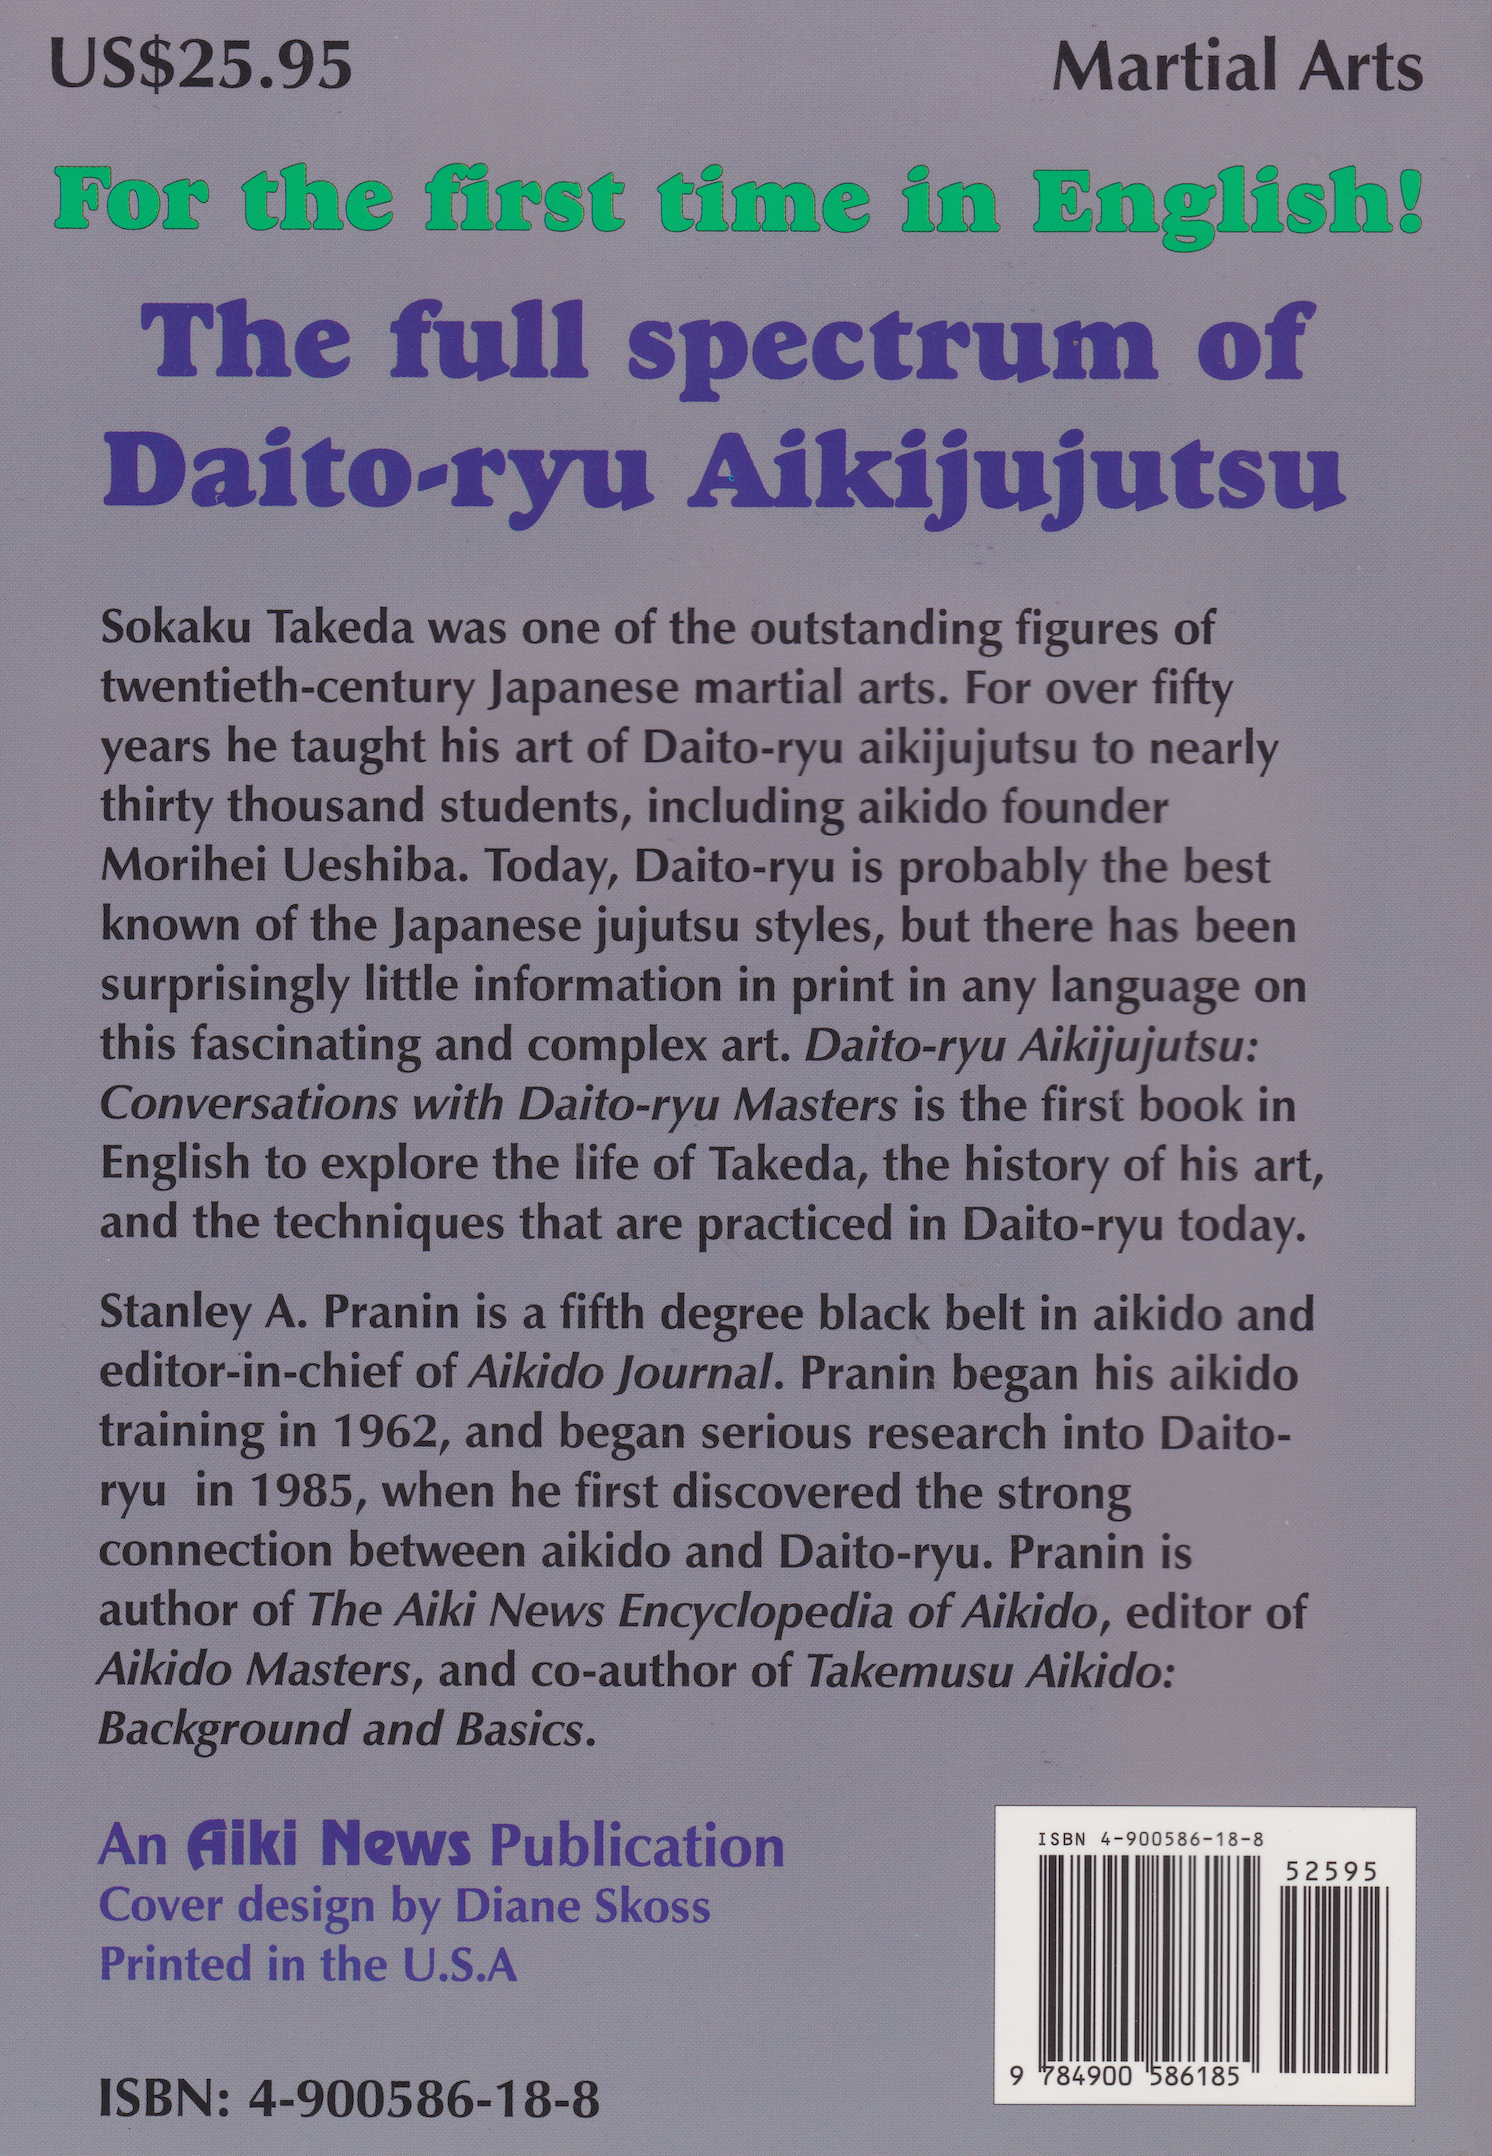 Conversations with Daito Ryu Aikijujutsu Masters Book by Stanley Pranin - Budovideos Inc